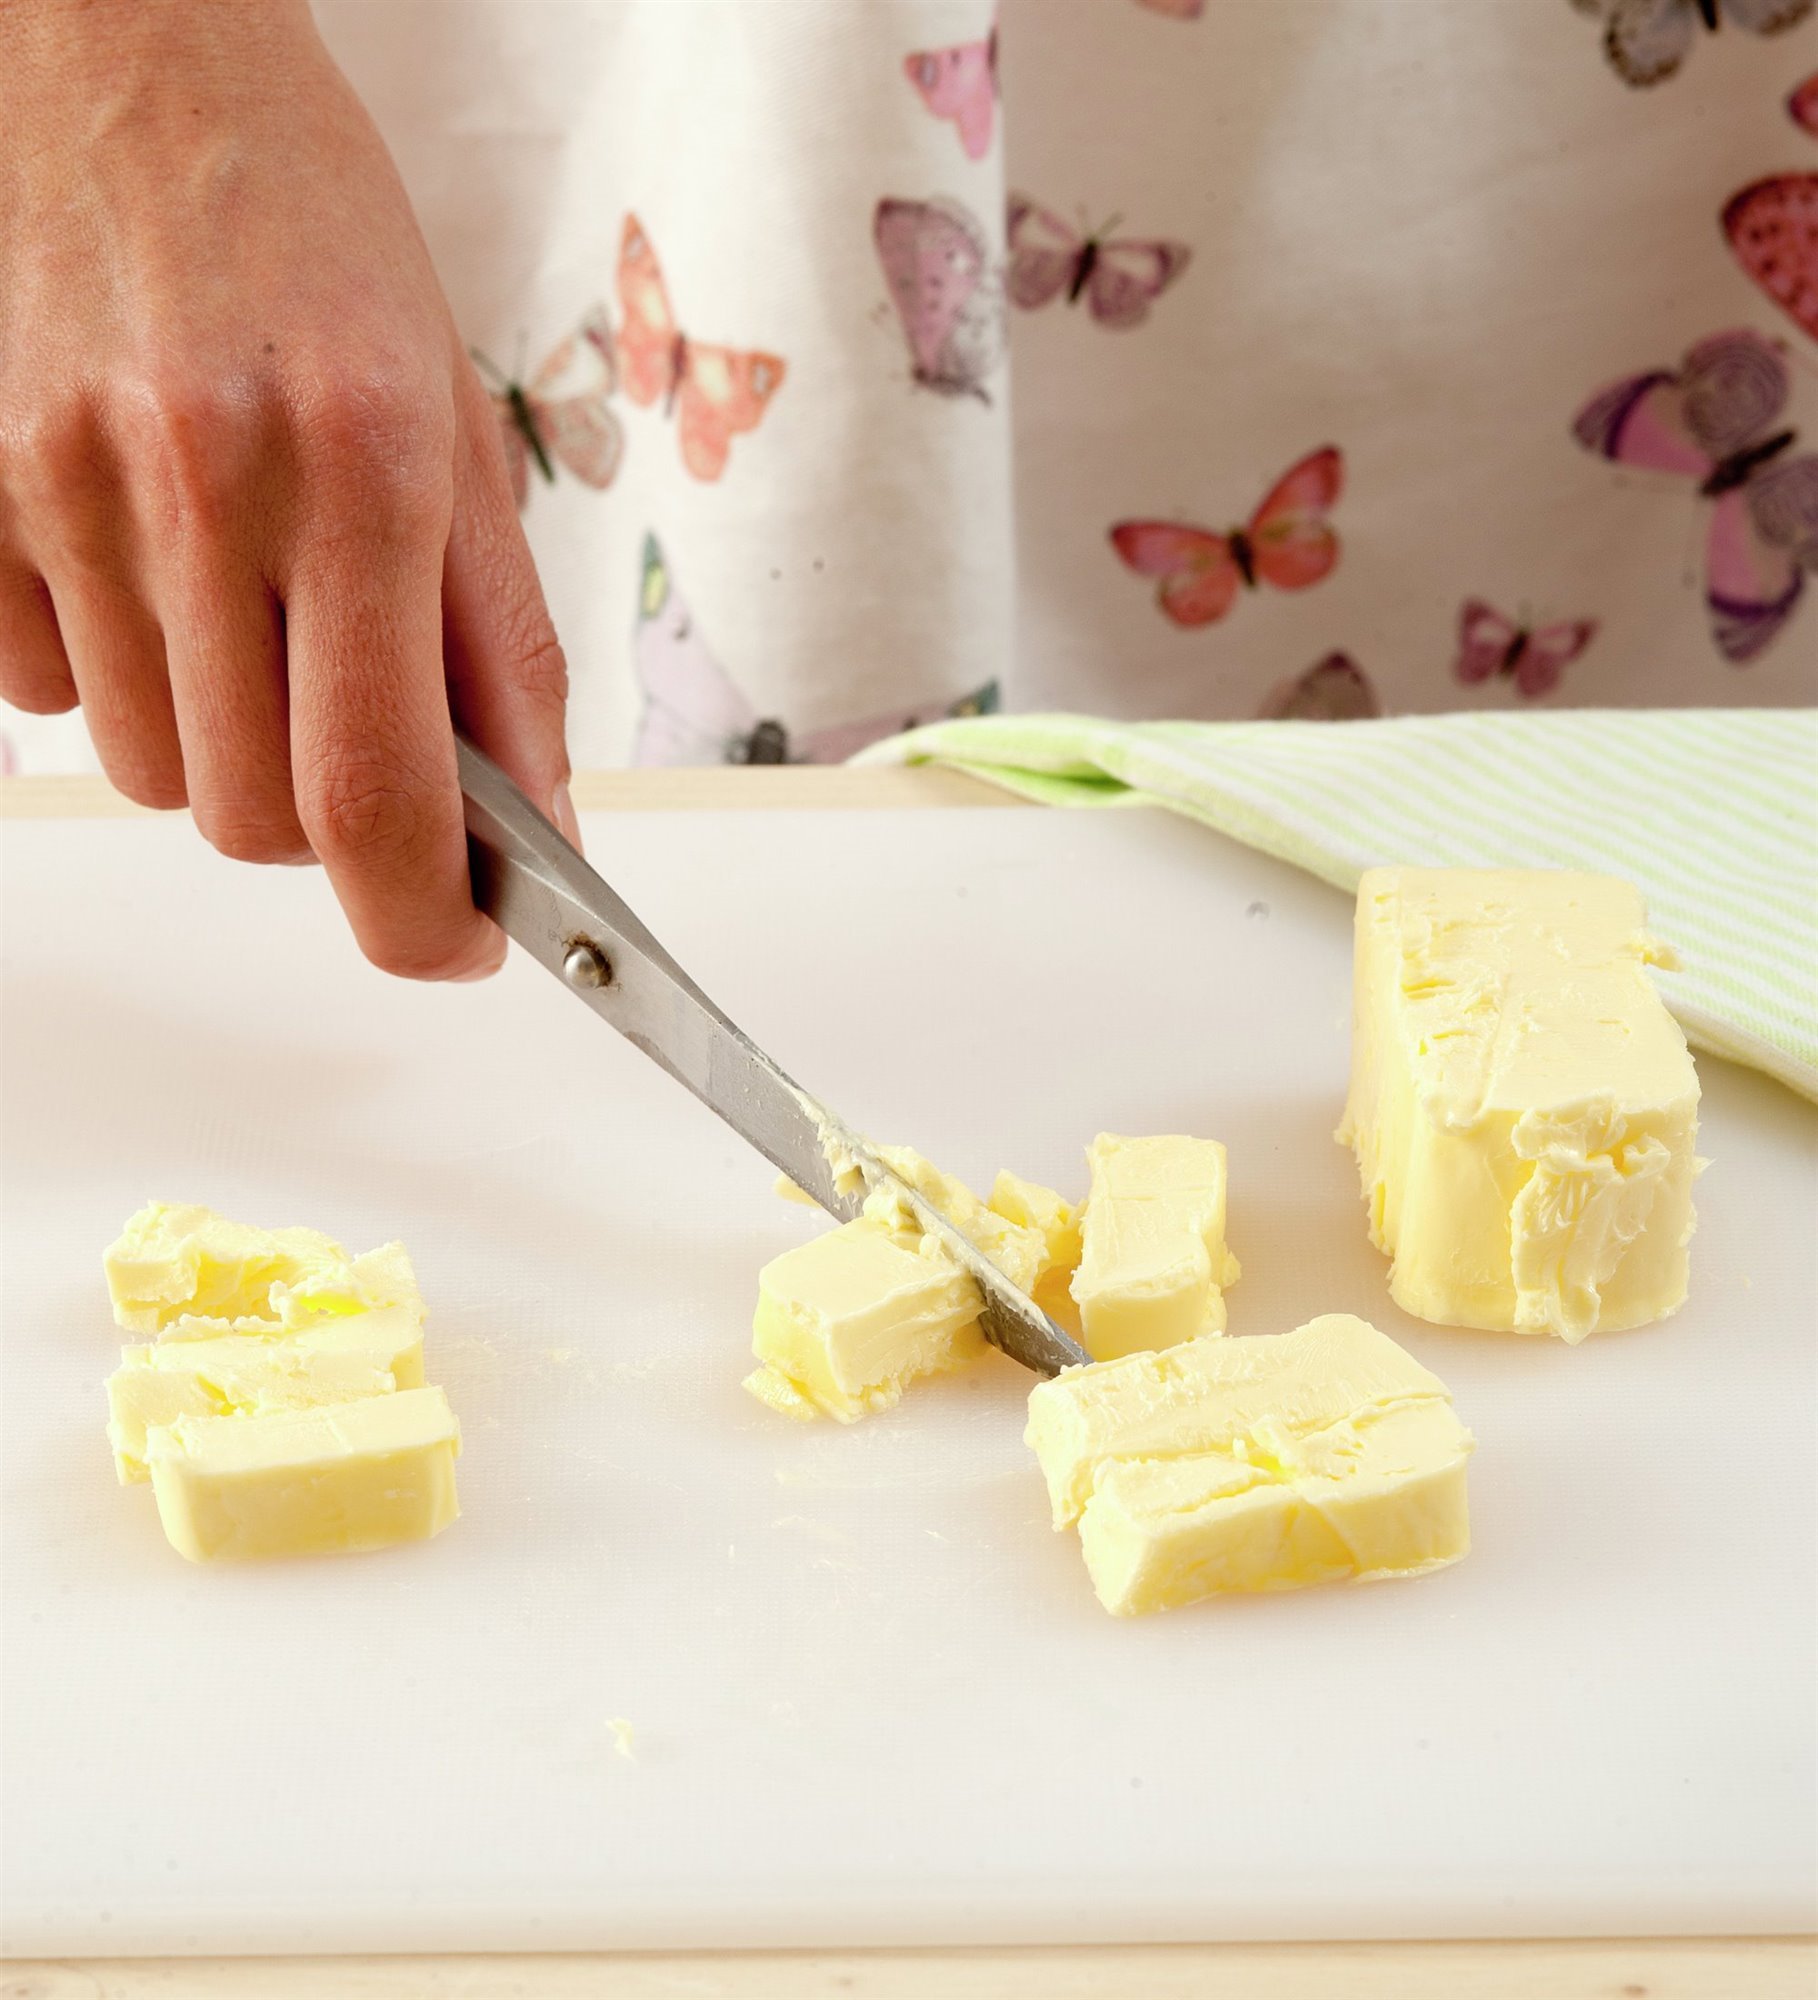 2. Trocea la mantequilla